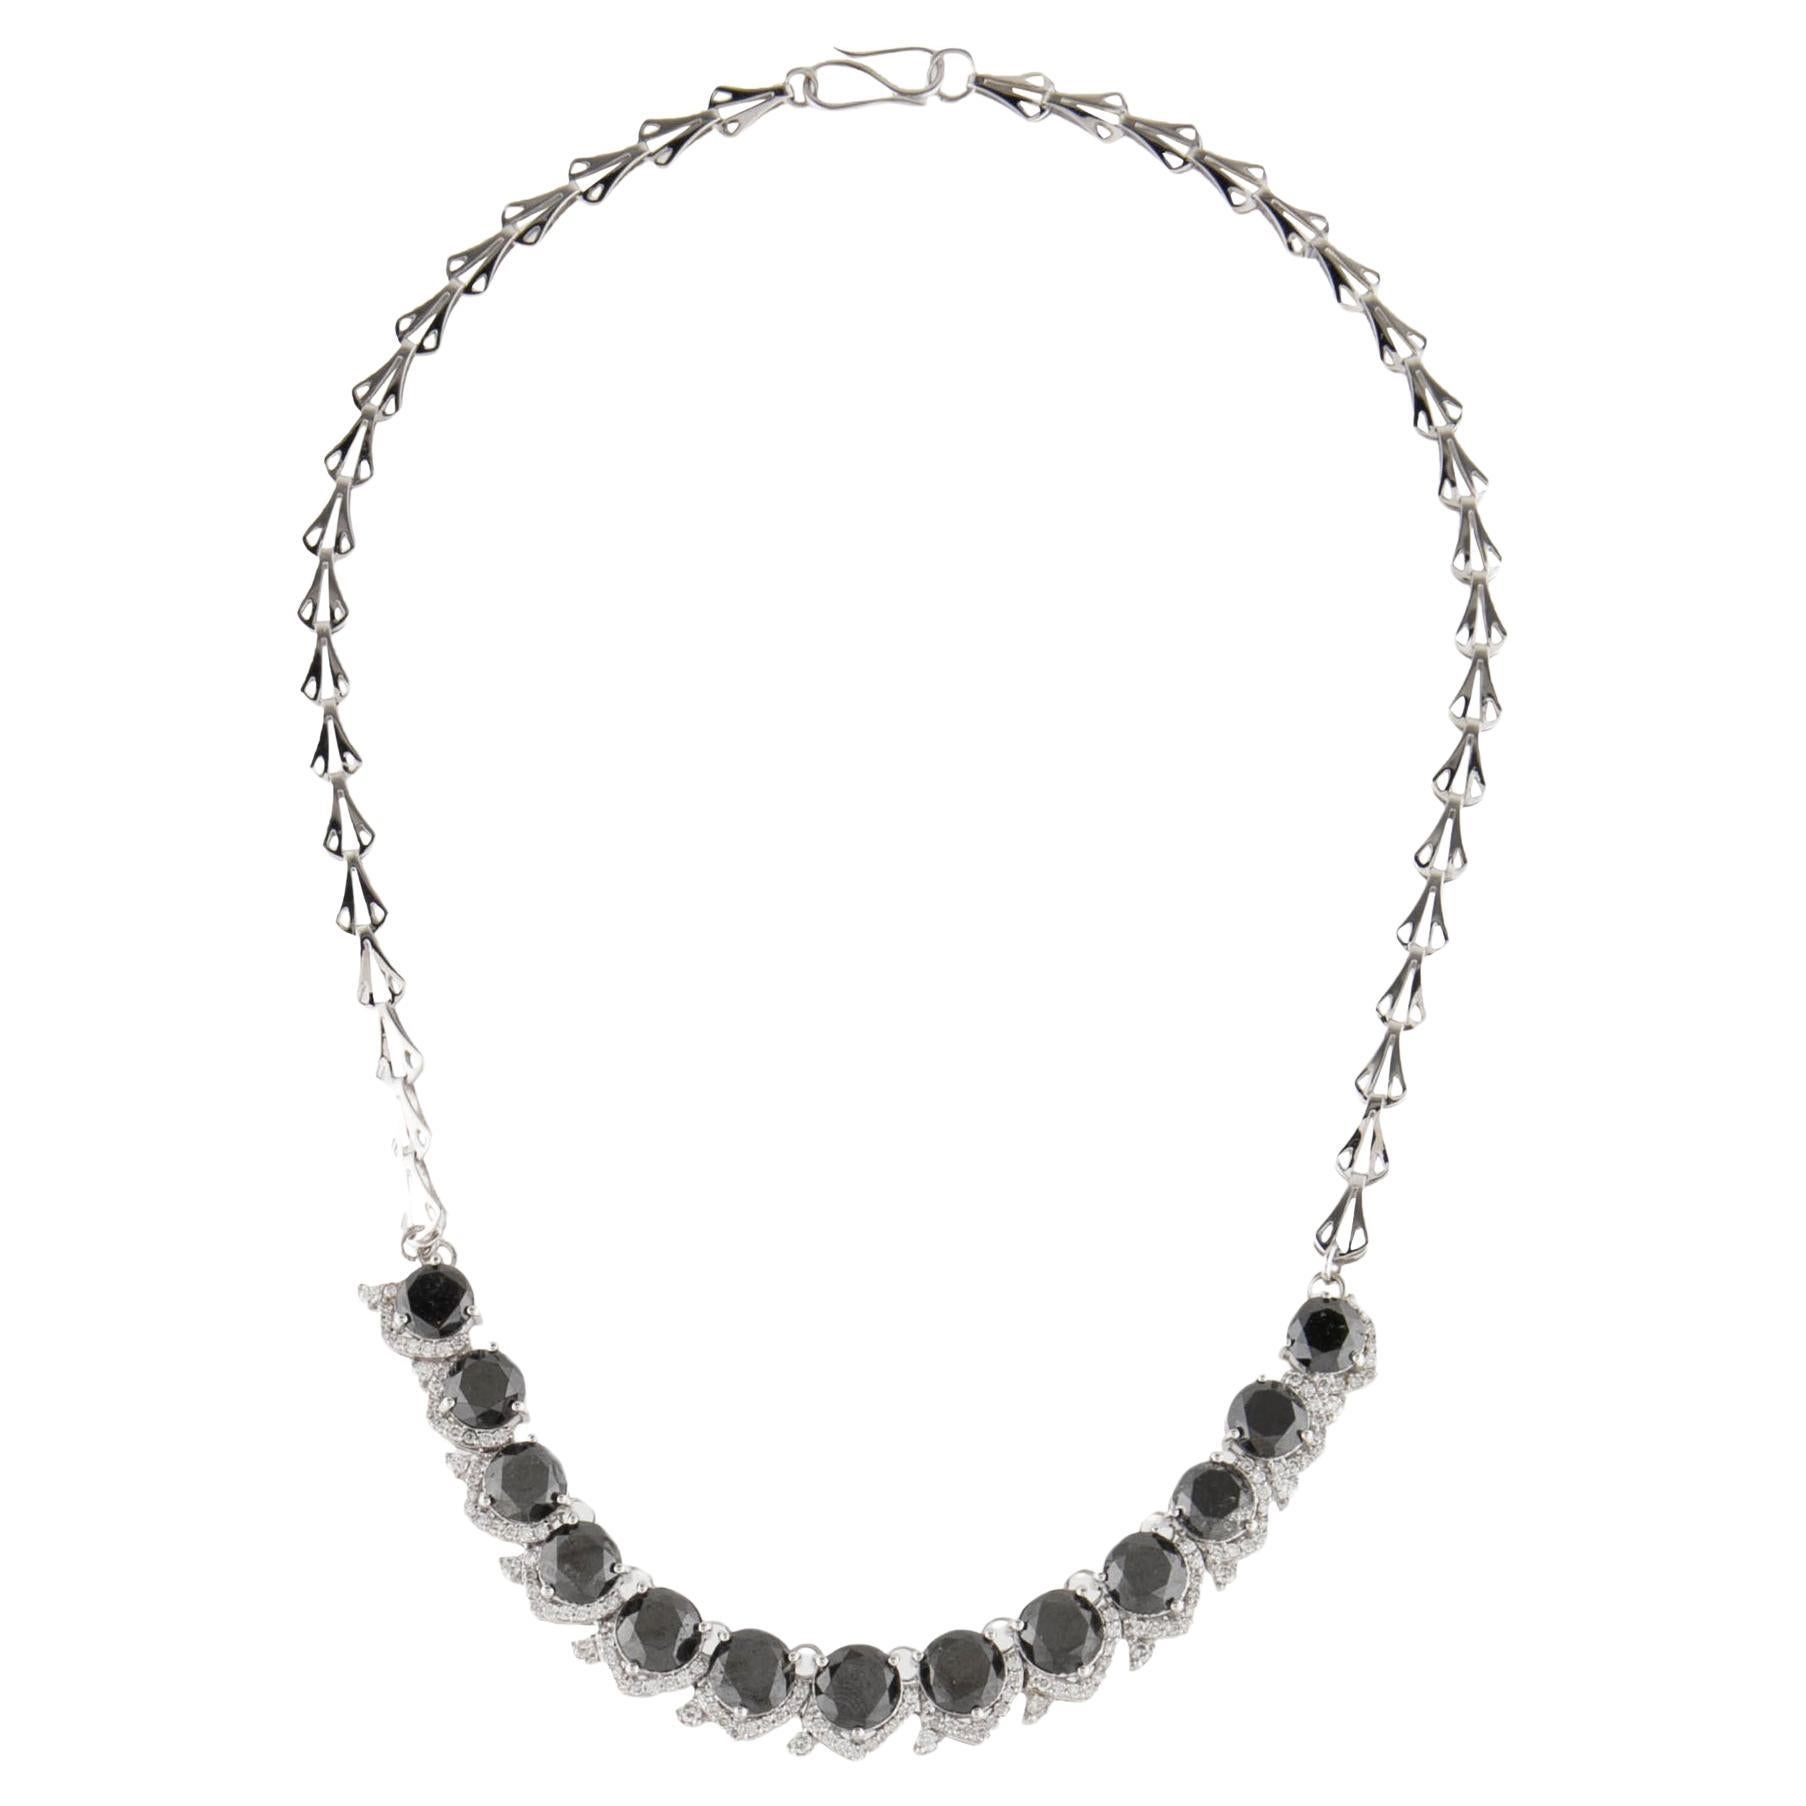 14K 22.55ctw Diamond Collar Necklace - Exquisite & Elegant Statement Piece